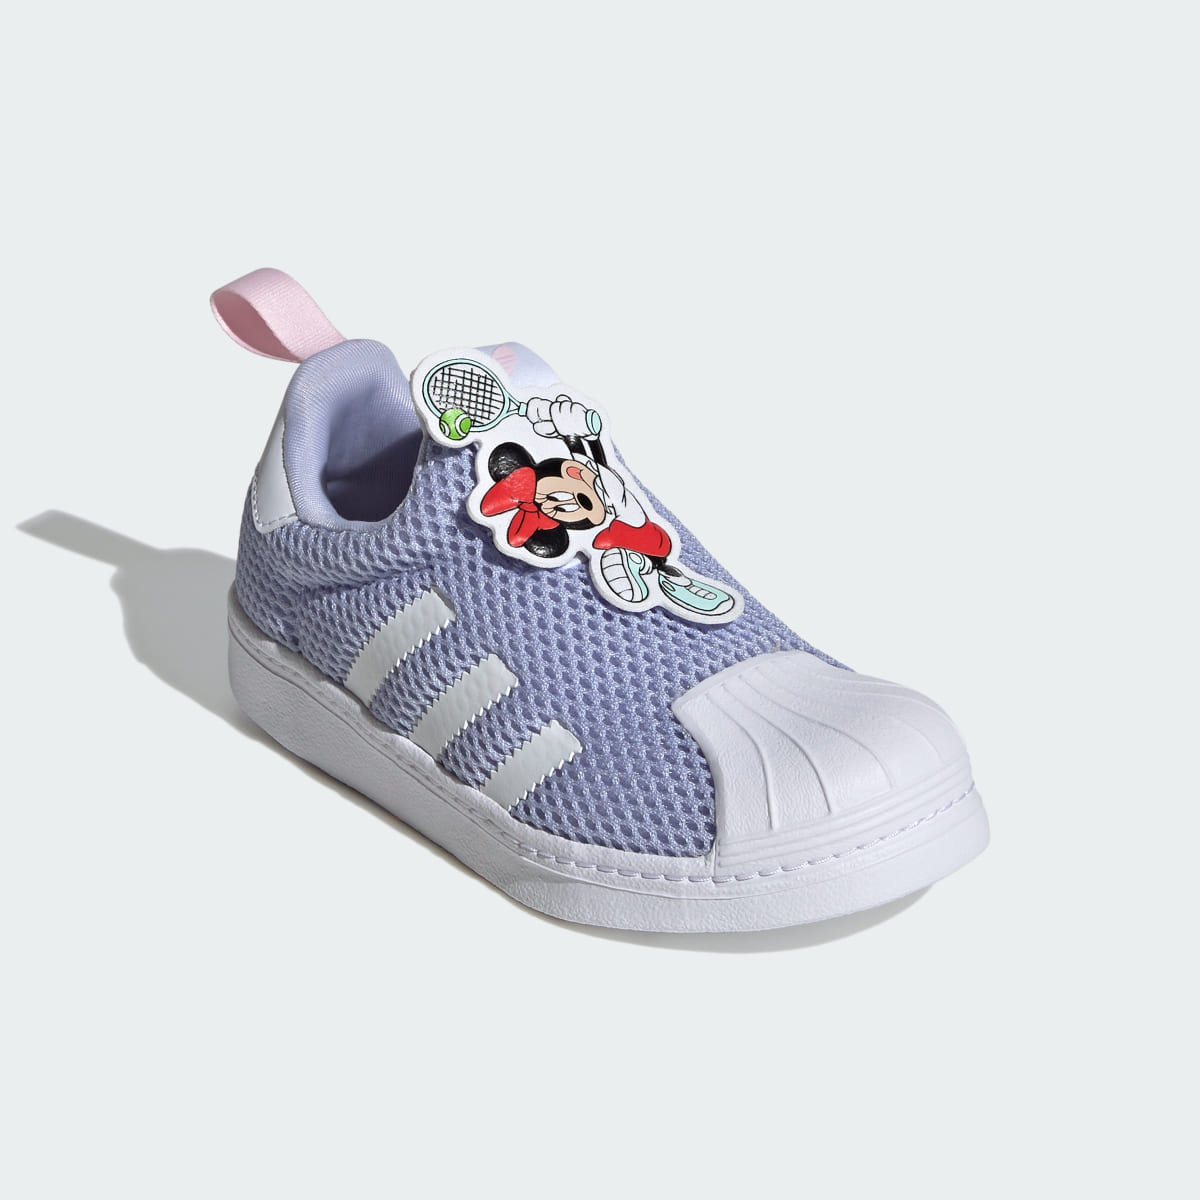 Adidas Originals x Disney Mickey Superstar 360 Shoes Kids. 5